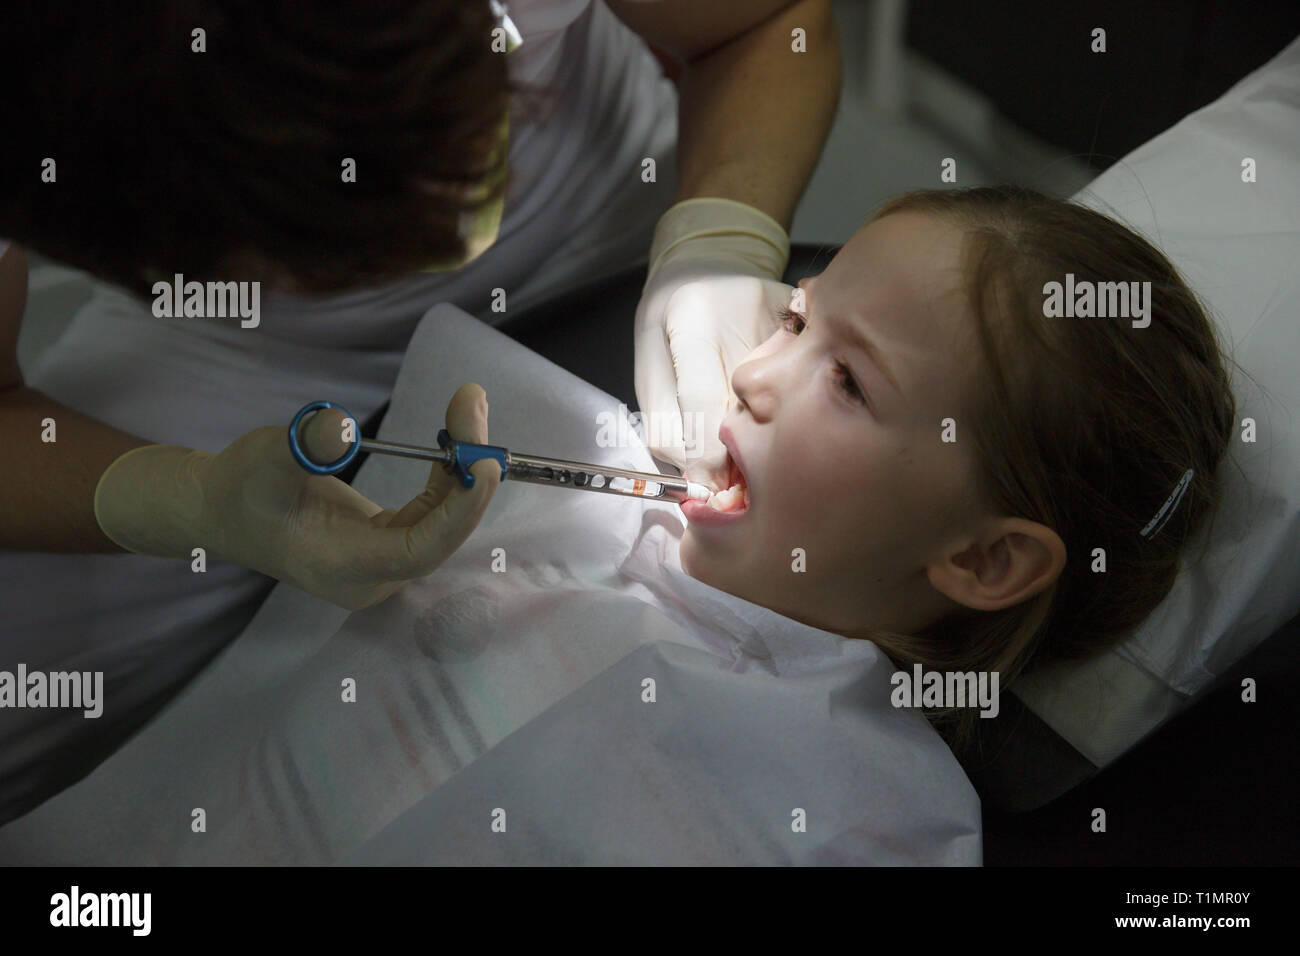 Kleines Mädchen am Zahnarzt, lokale Anästhesie Injektion in das Zahnfleisch, Zahnarzt numbing Gummis für zahnmedizinische Arbeit. Kinder Zahnpflege Konzept. Stockfoto